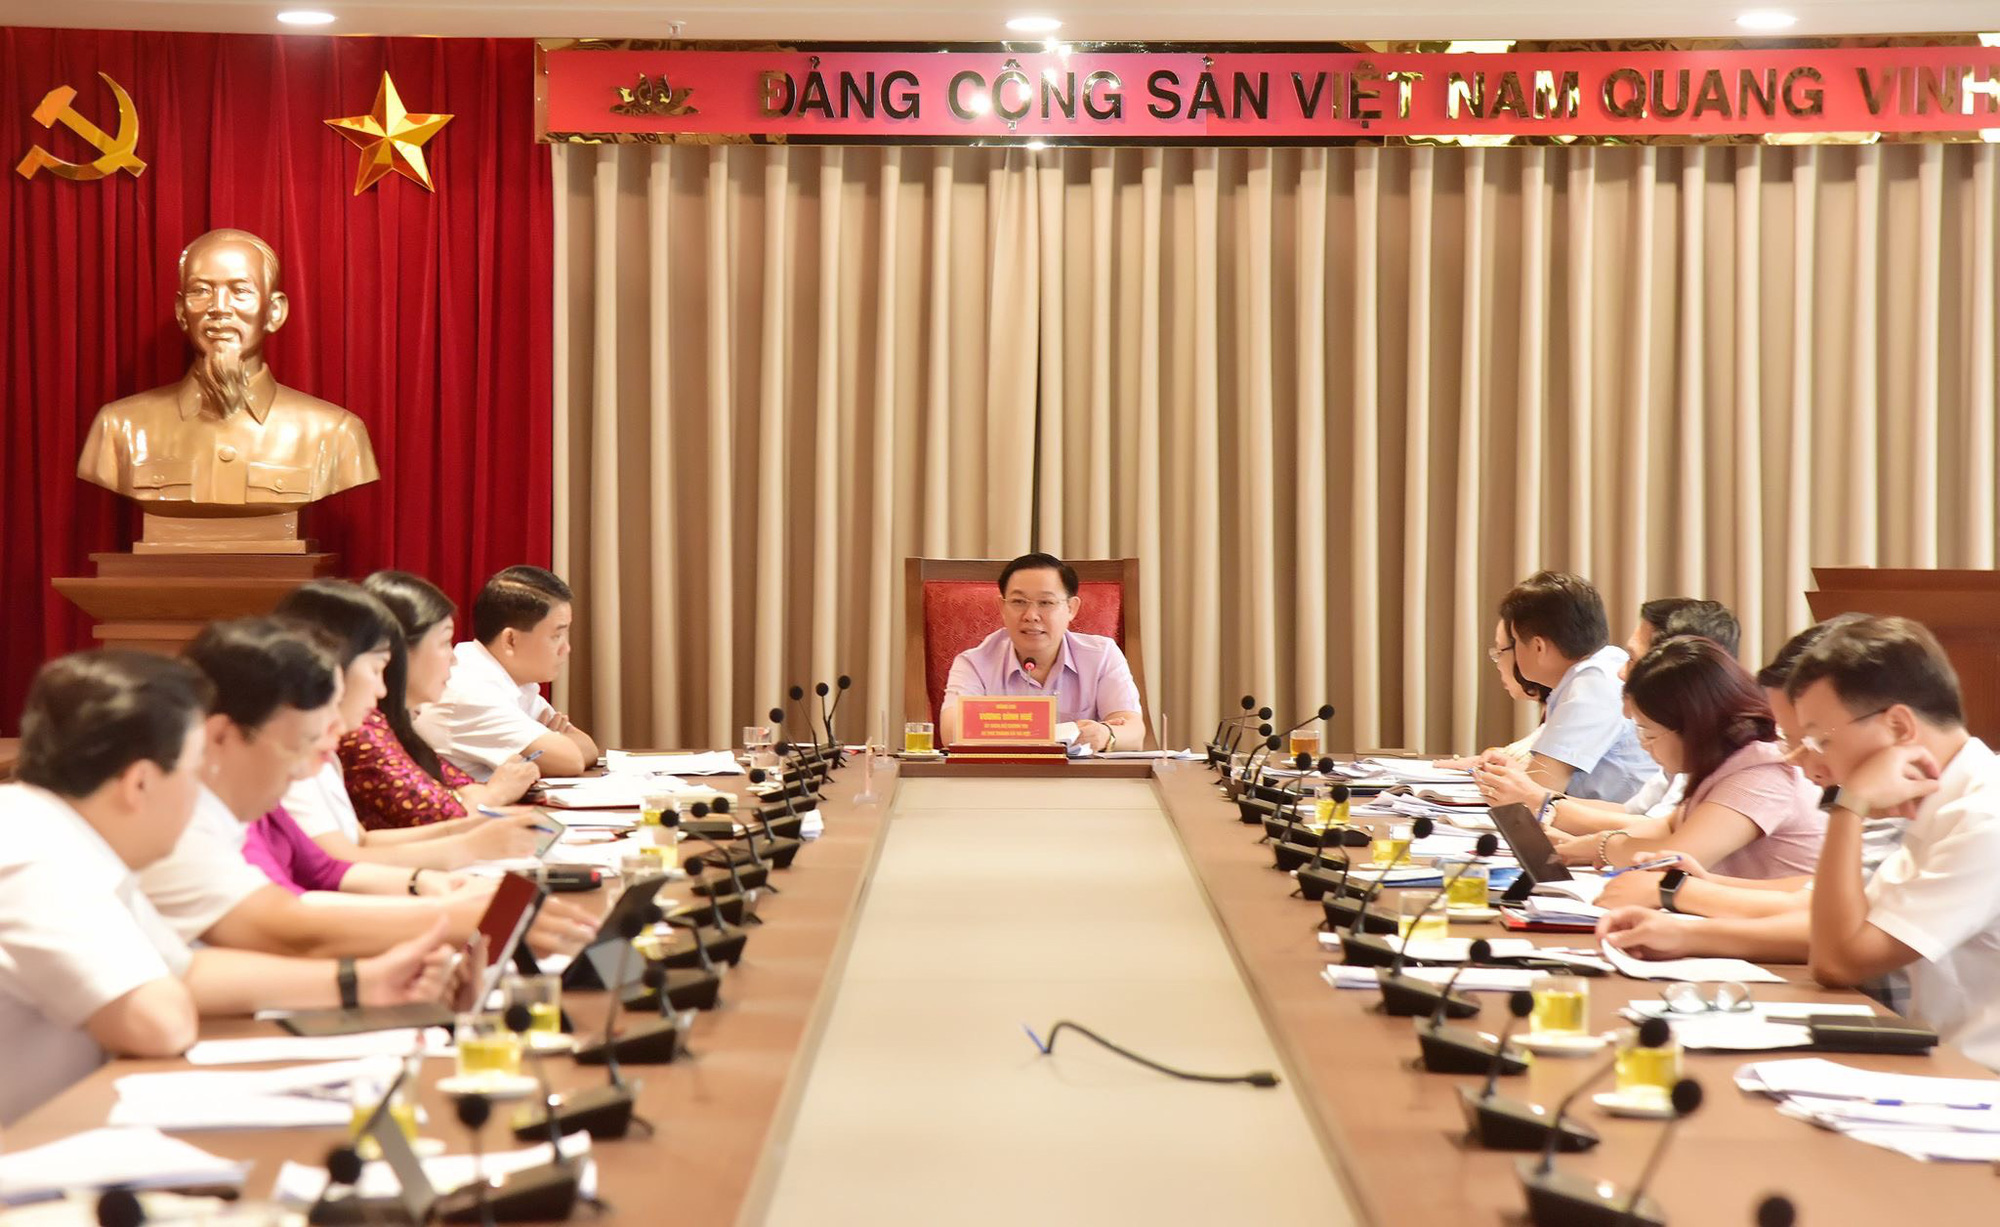 Hà Nội sẽ thí điểm thi tuyển lãnh đạo phòng, thủ trưởng đơn vị sự nghiệp...từ năm 2021 - Ảnh 1.